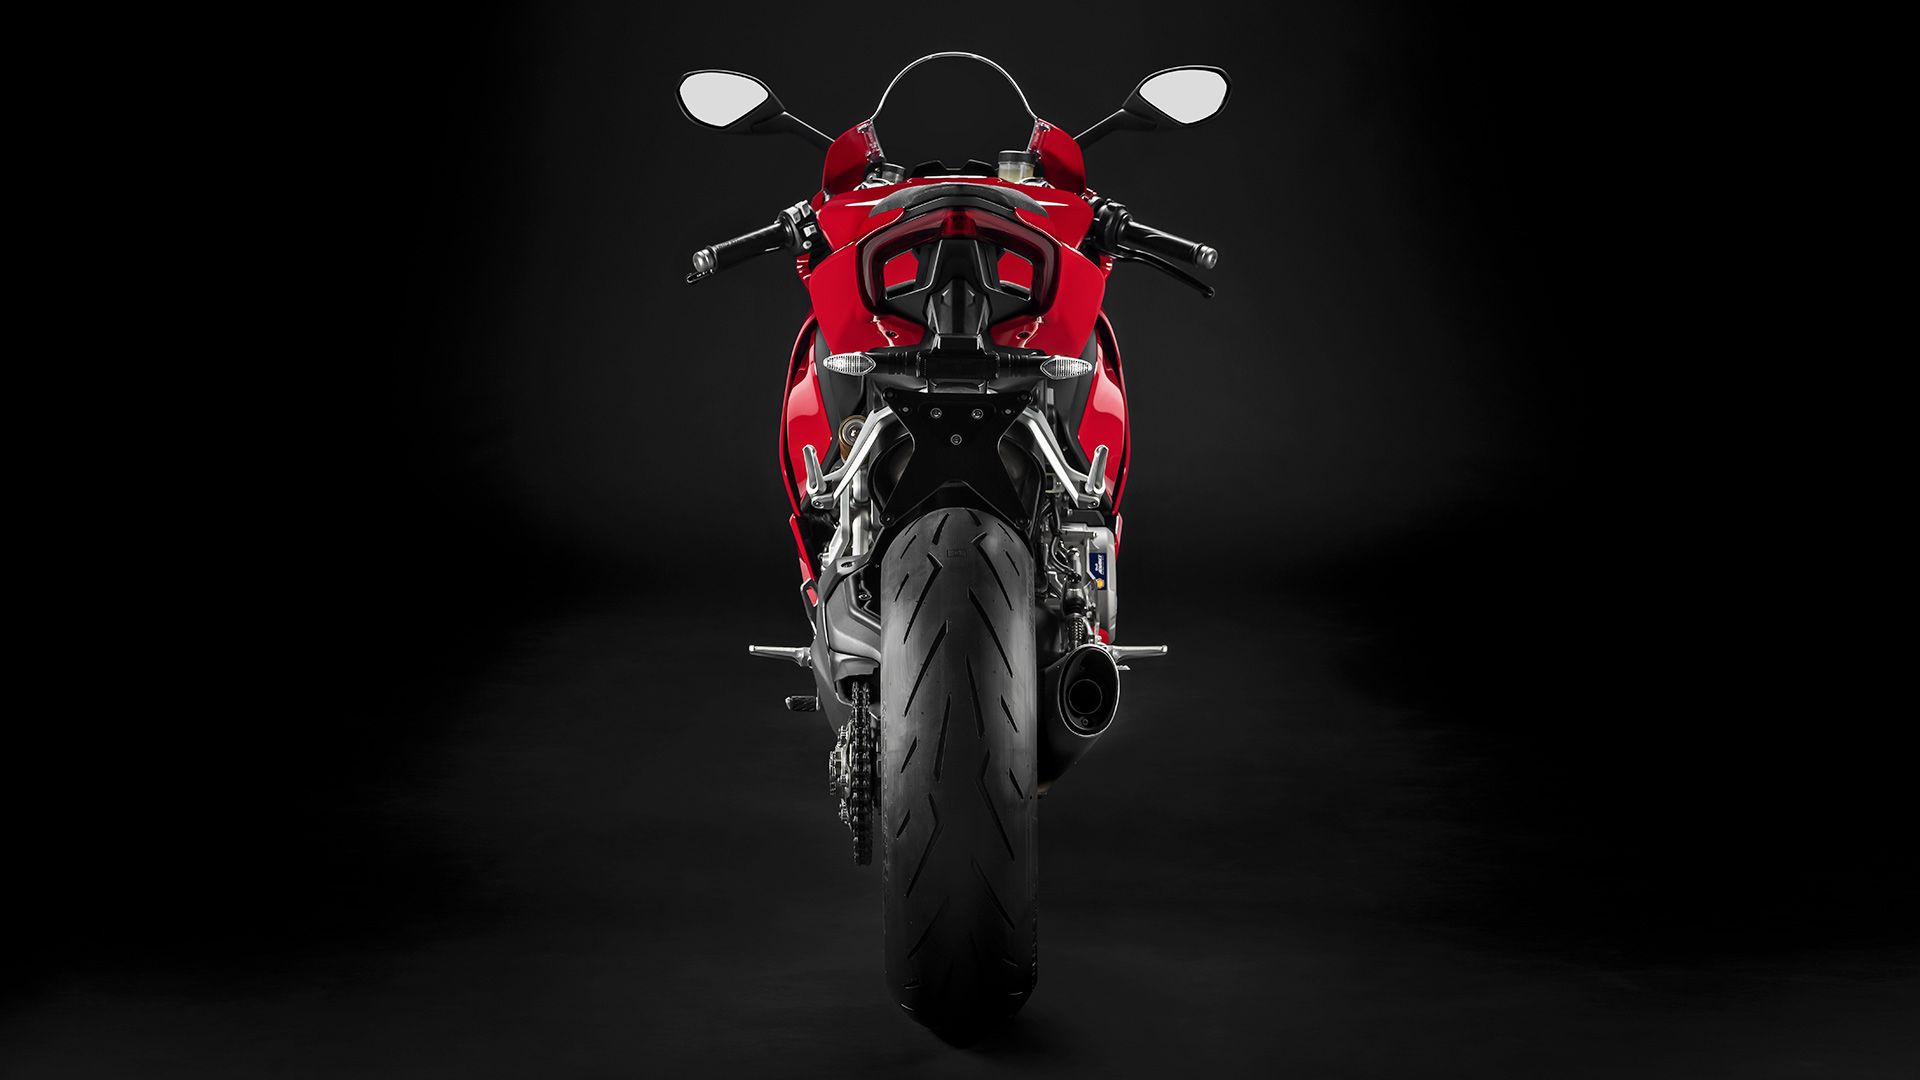 Ducati Panigale V2 [Specs & Info]